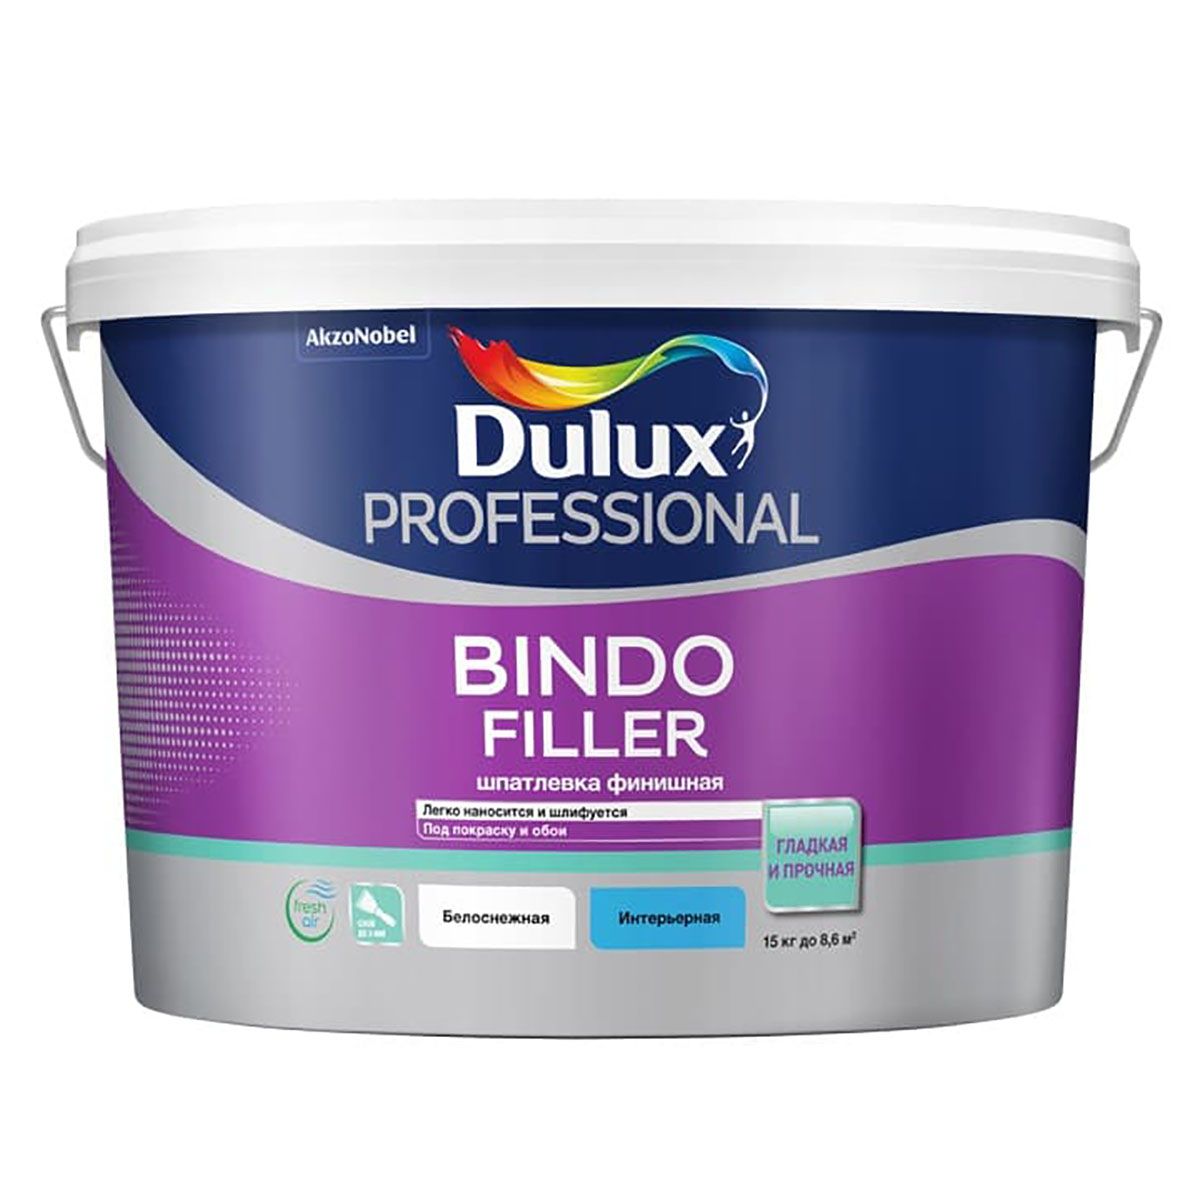 Шпатлевка для стен и потолков Dulux Bindo Filler финишная, 8,6 л финишная жидкая шпатлевка oscar